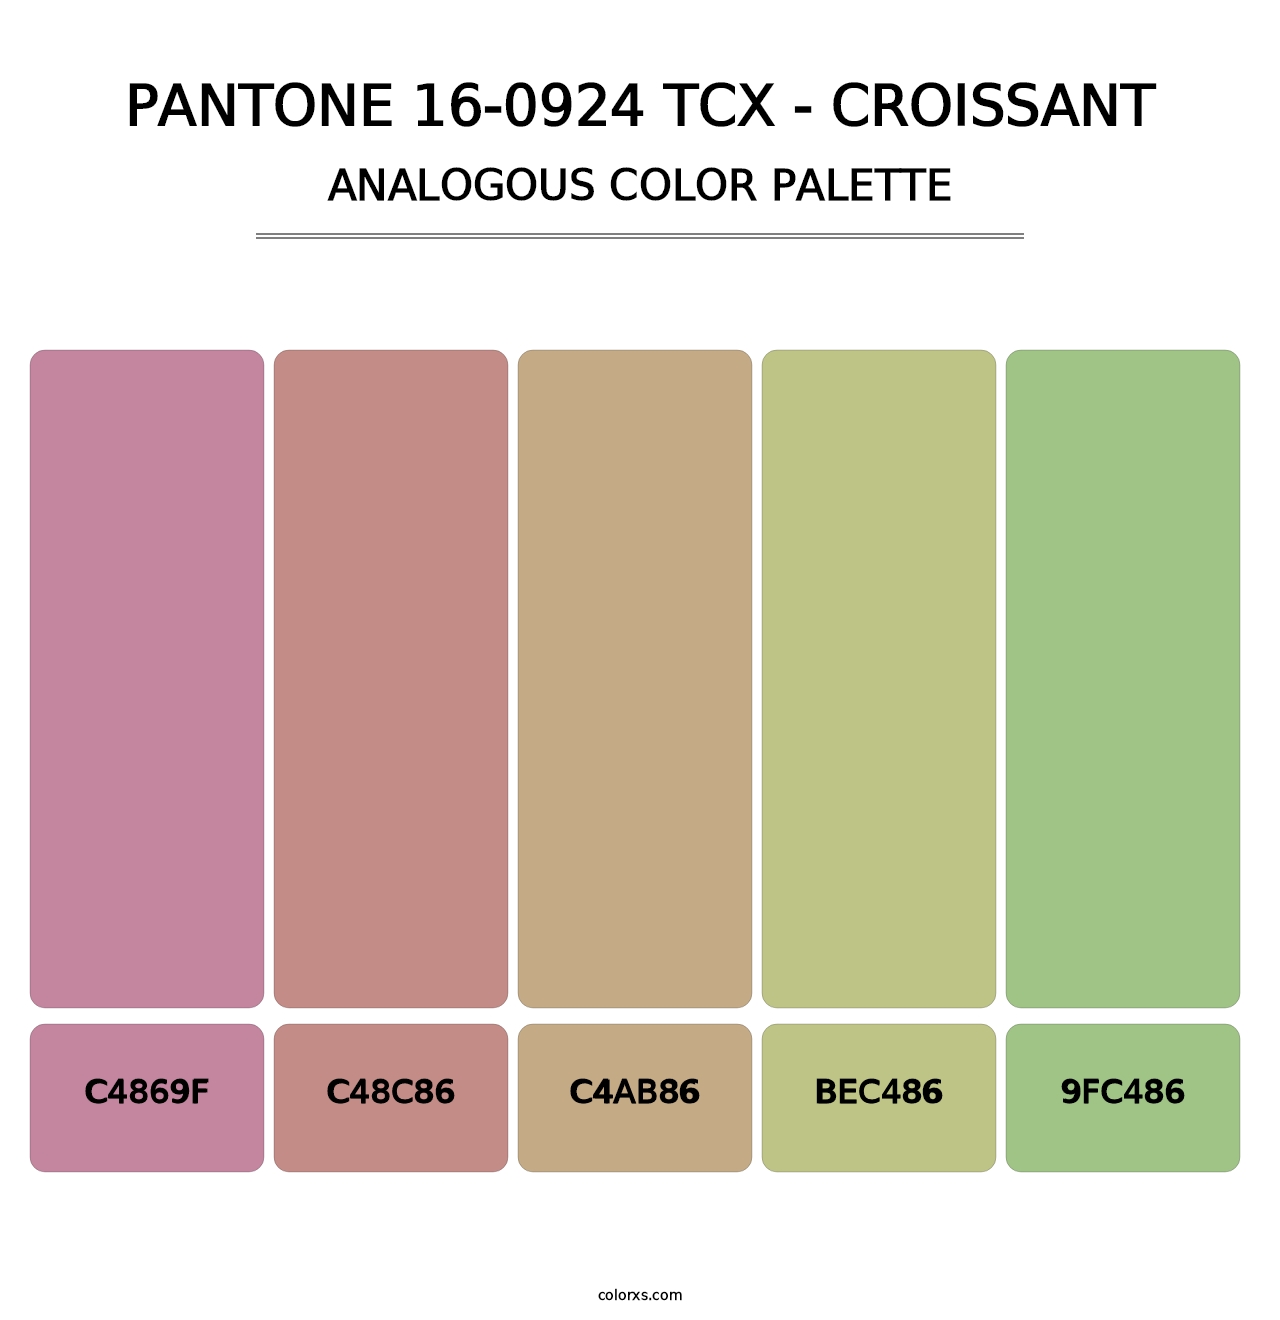 PANTONE 16-0924 TCX - Croissant - Analogous Color Palette